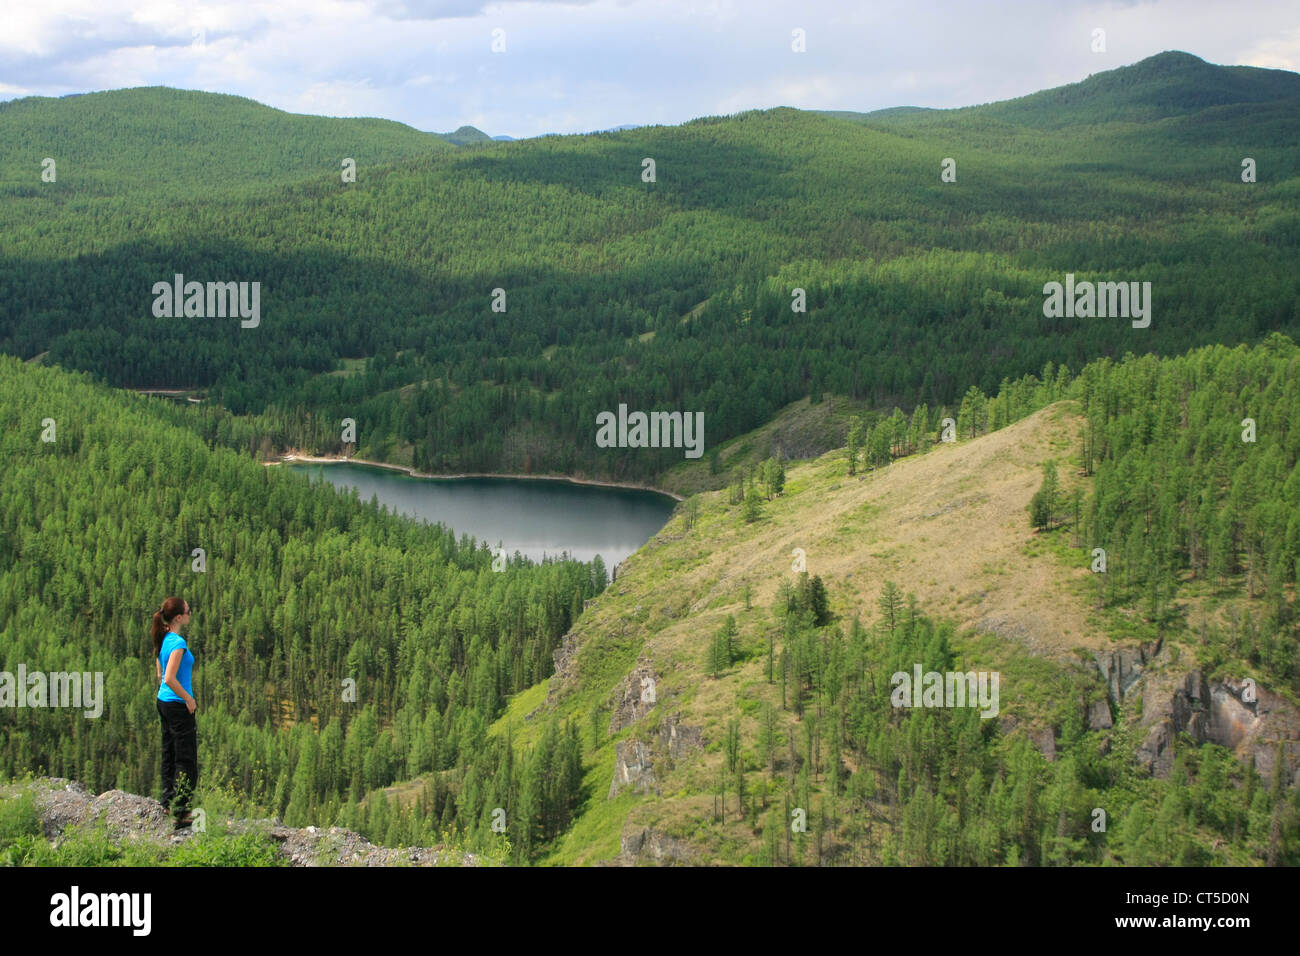 Woman admiring view de lac de montagne entouré d'une forêt de pins, l'Altaï, en Sibérie, Russie Banque D'Images